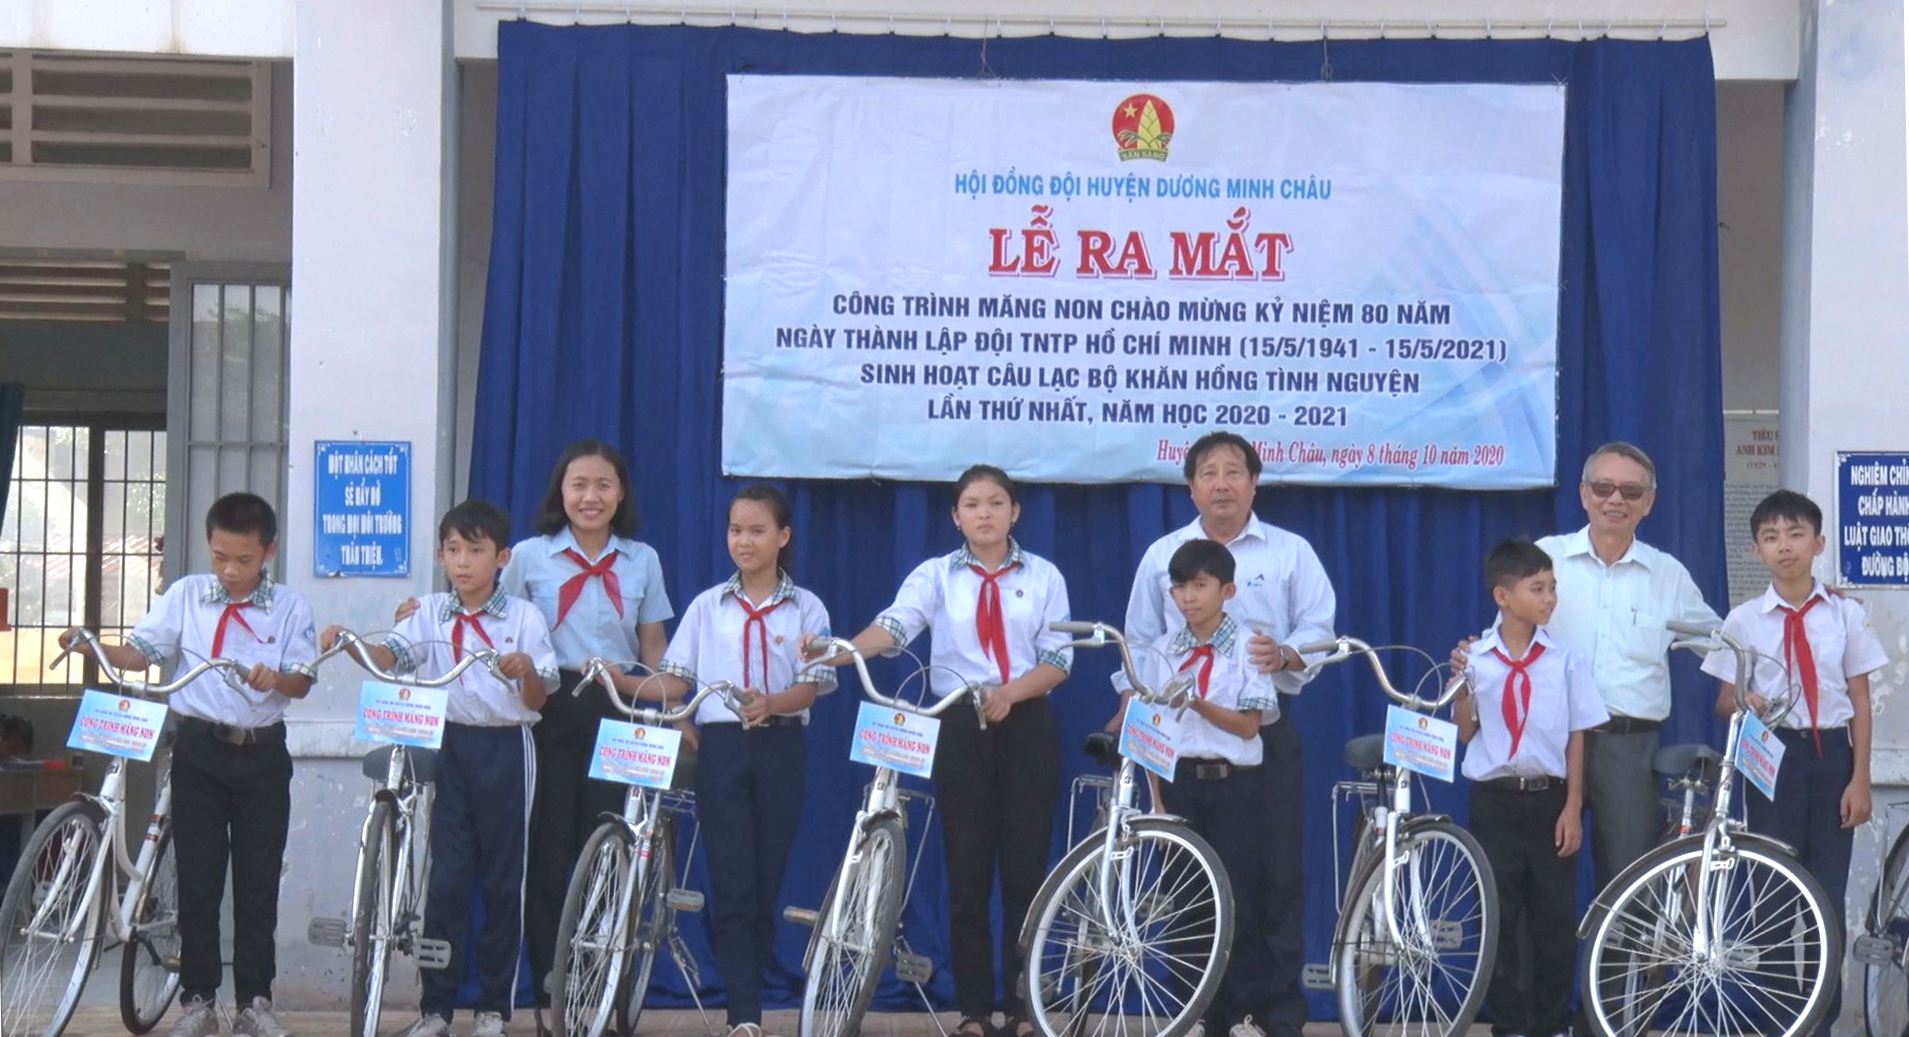 Hội đồng đội huyện Dương Minh Châu thực hiện công trình măng non tặng 20 xe đạp cho học sinh